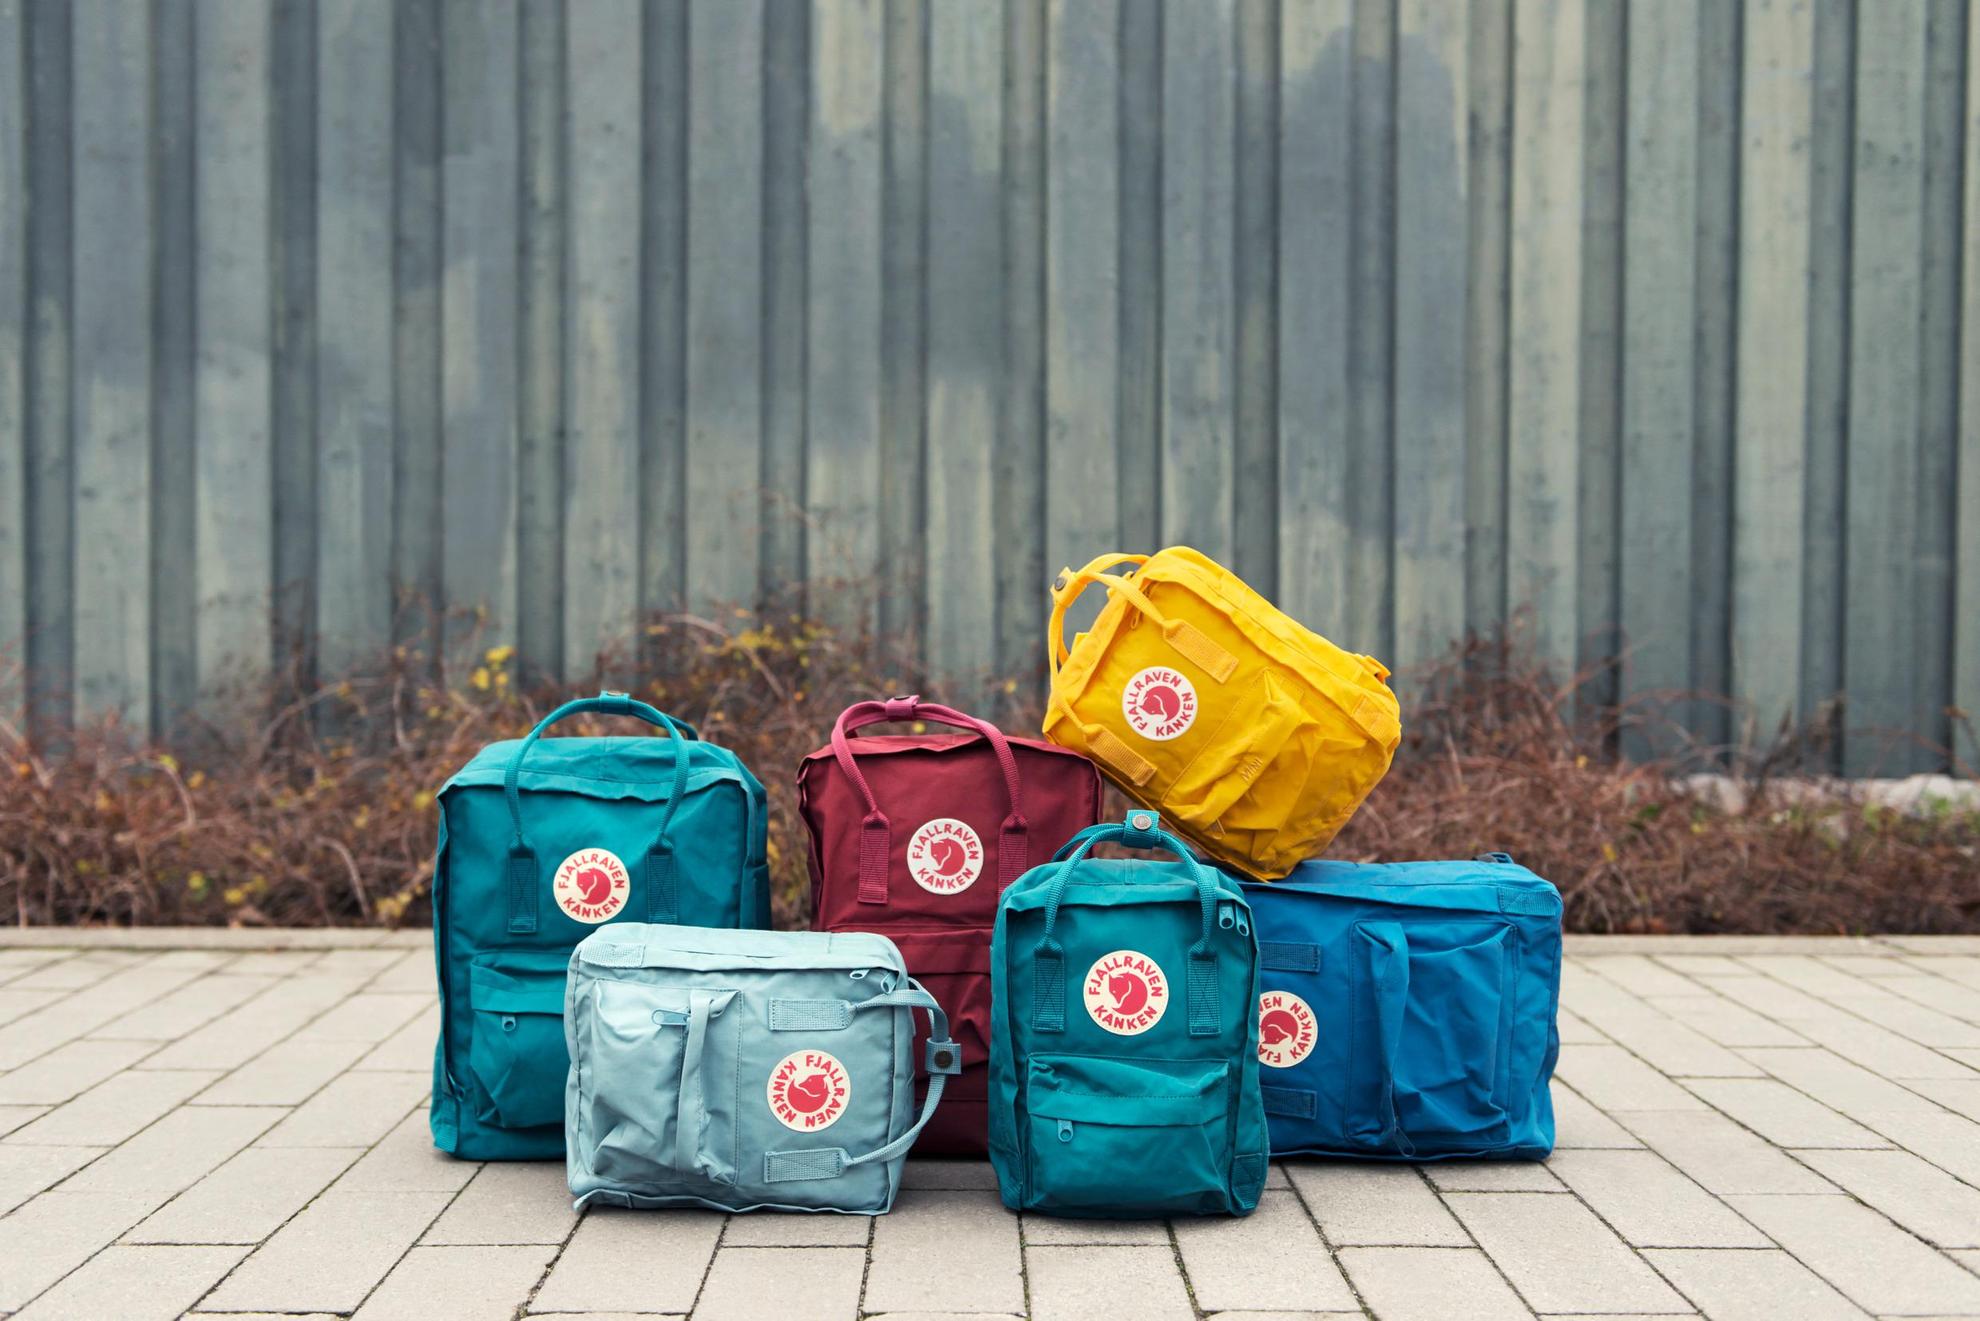 Different-coloured Kånken backpacks arranged on a sidewalk.